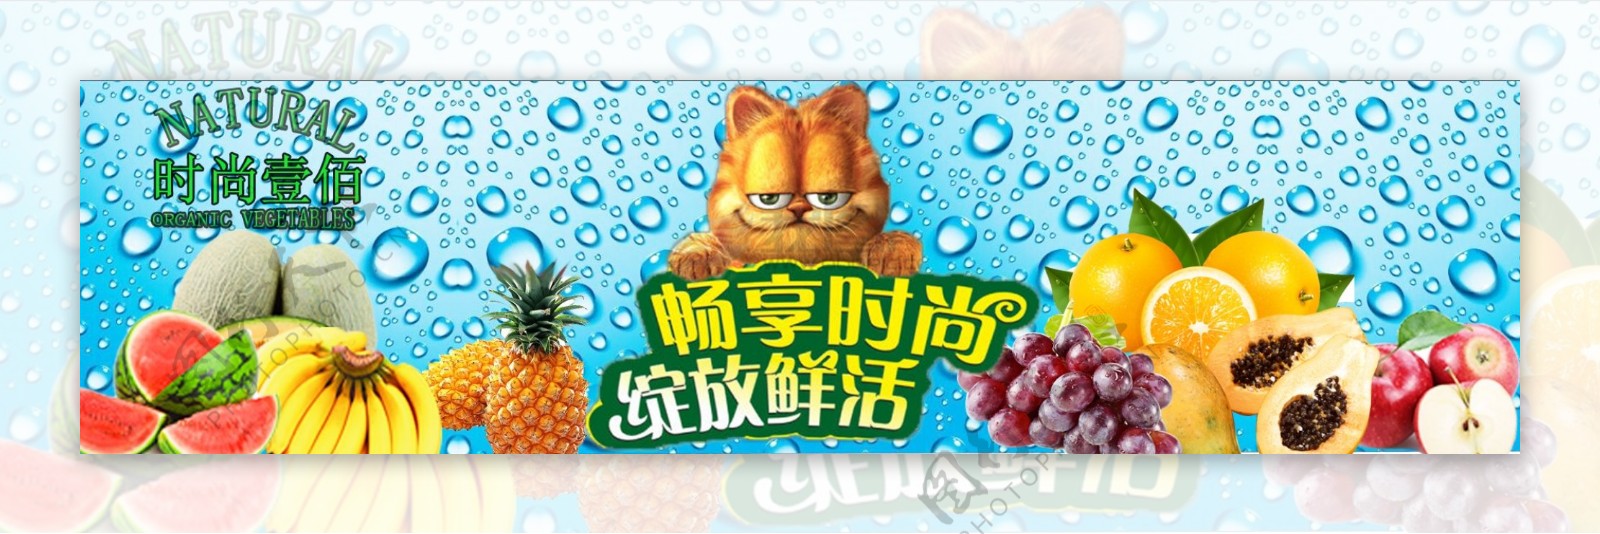 网上水果超市的海报